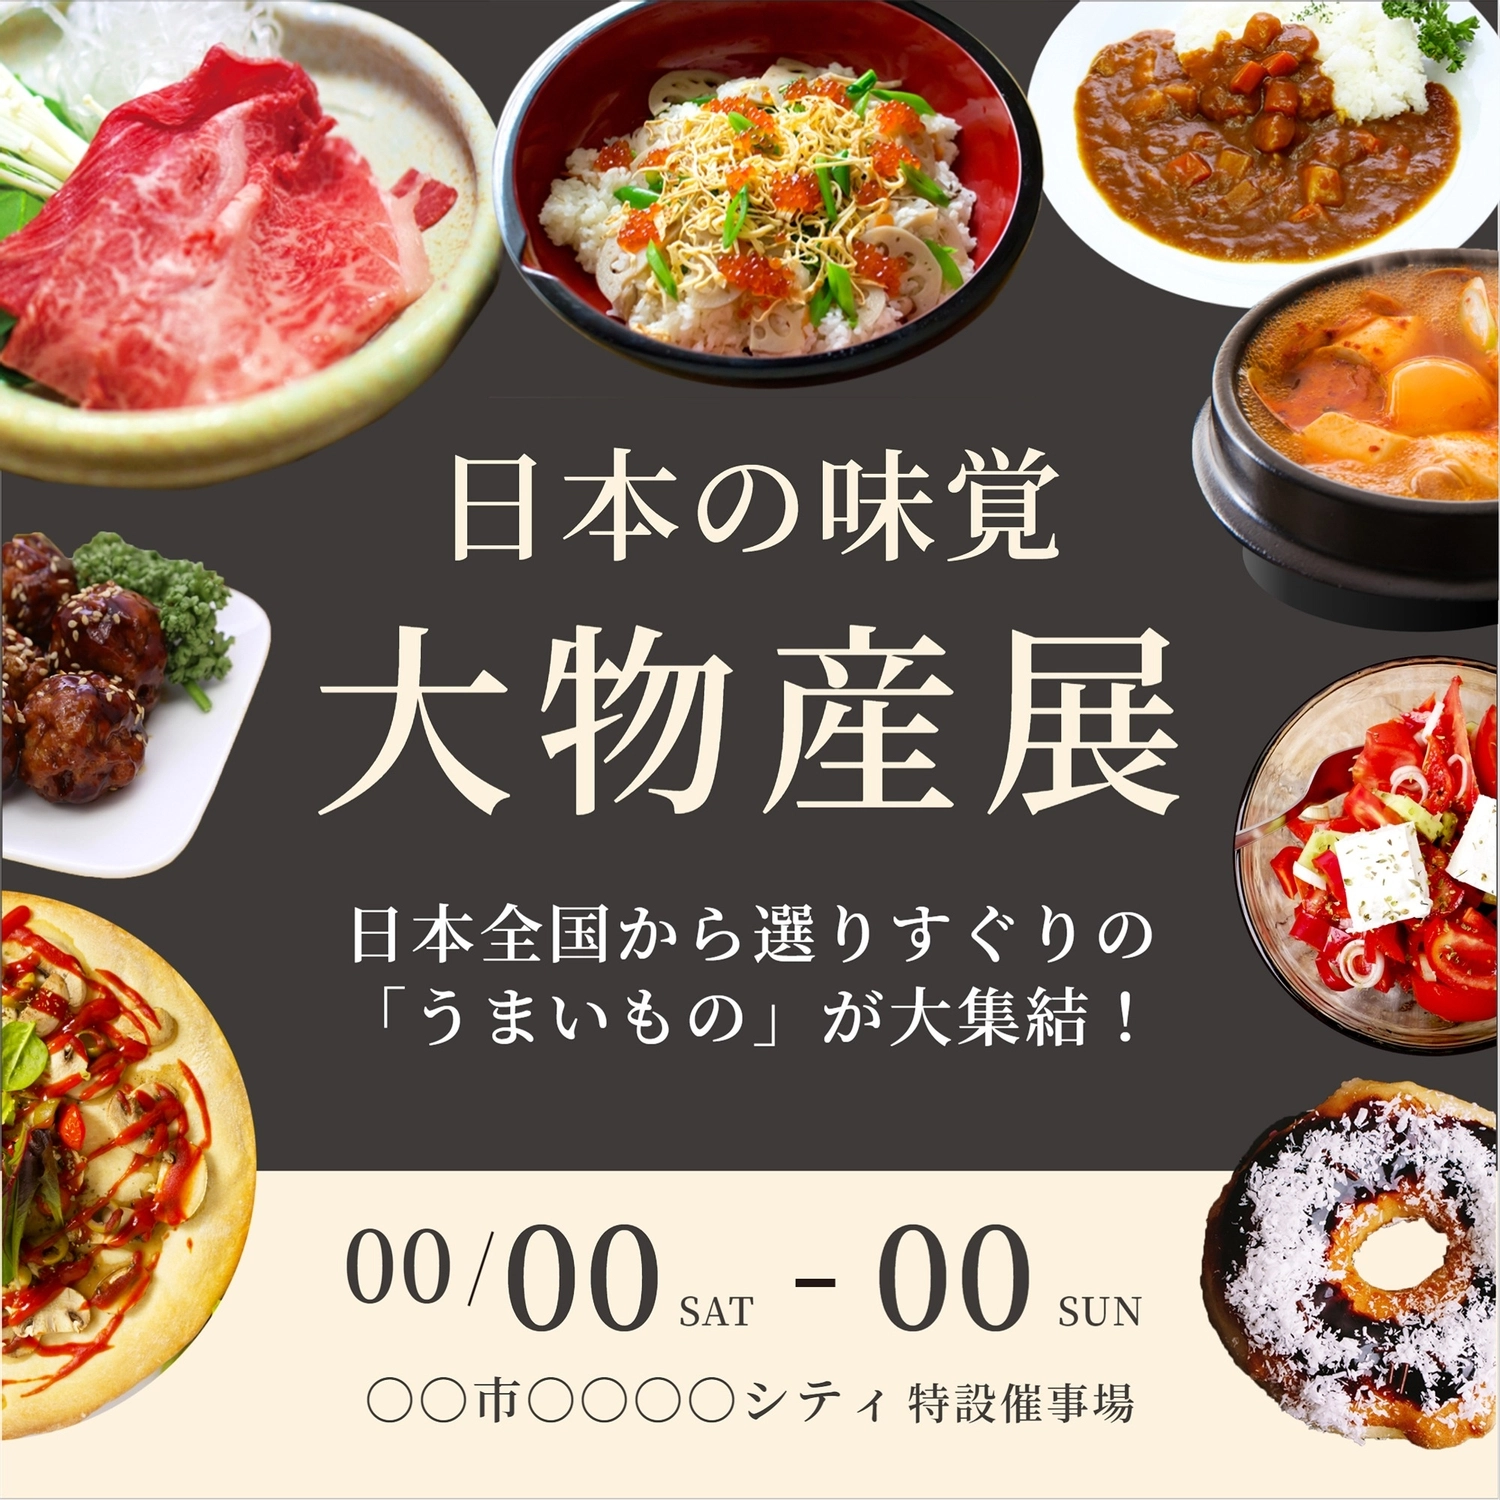 日本の味覚物産展テンプレート, Mingdian, meat, chirashi sushi, Instagram Post template